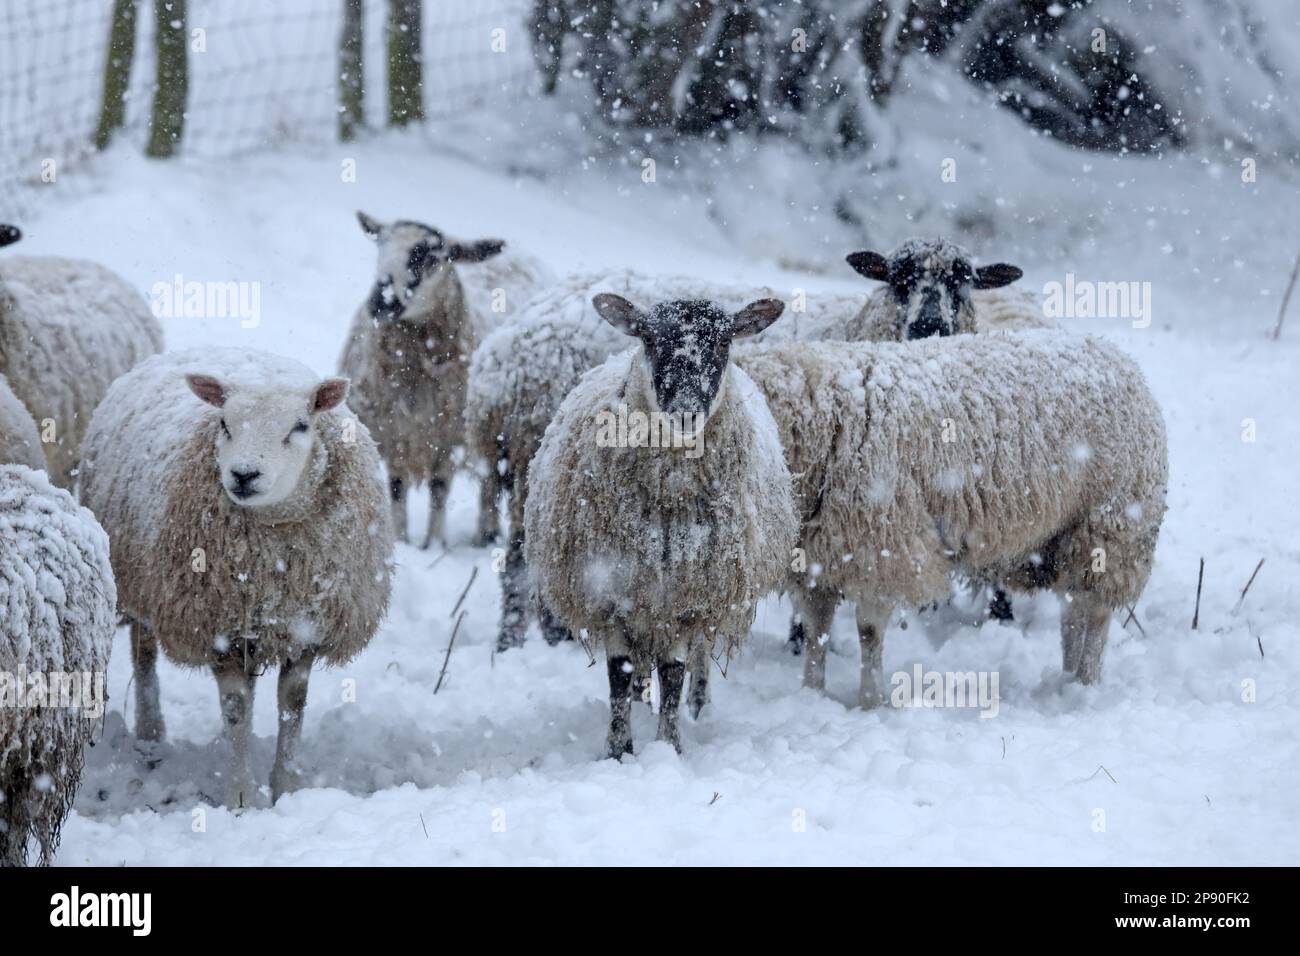 Teesdale, County Durham, Großbritannien. 10. März 2023 Wetter in Großbritannien. Mit einer bernsteinfarbenen Wetterwarnung in der Gewalt schwangere Schafe unter den Bäumen beherbergen, während starker Schnee in Teesdale, County Durham fällt. Schneestürme zu dieser Jahreszeit werden von Bauern in den Dales als „Lambstürme“ bezeichnet, da sie zu der Zeit auftreten, zu der die Schafe ihre Lämmer zur Welt bringen. Kredit: David Forster/Alamy Live News Stockfoto